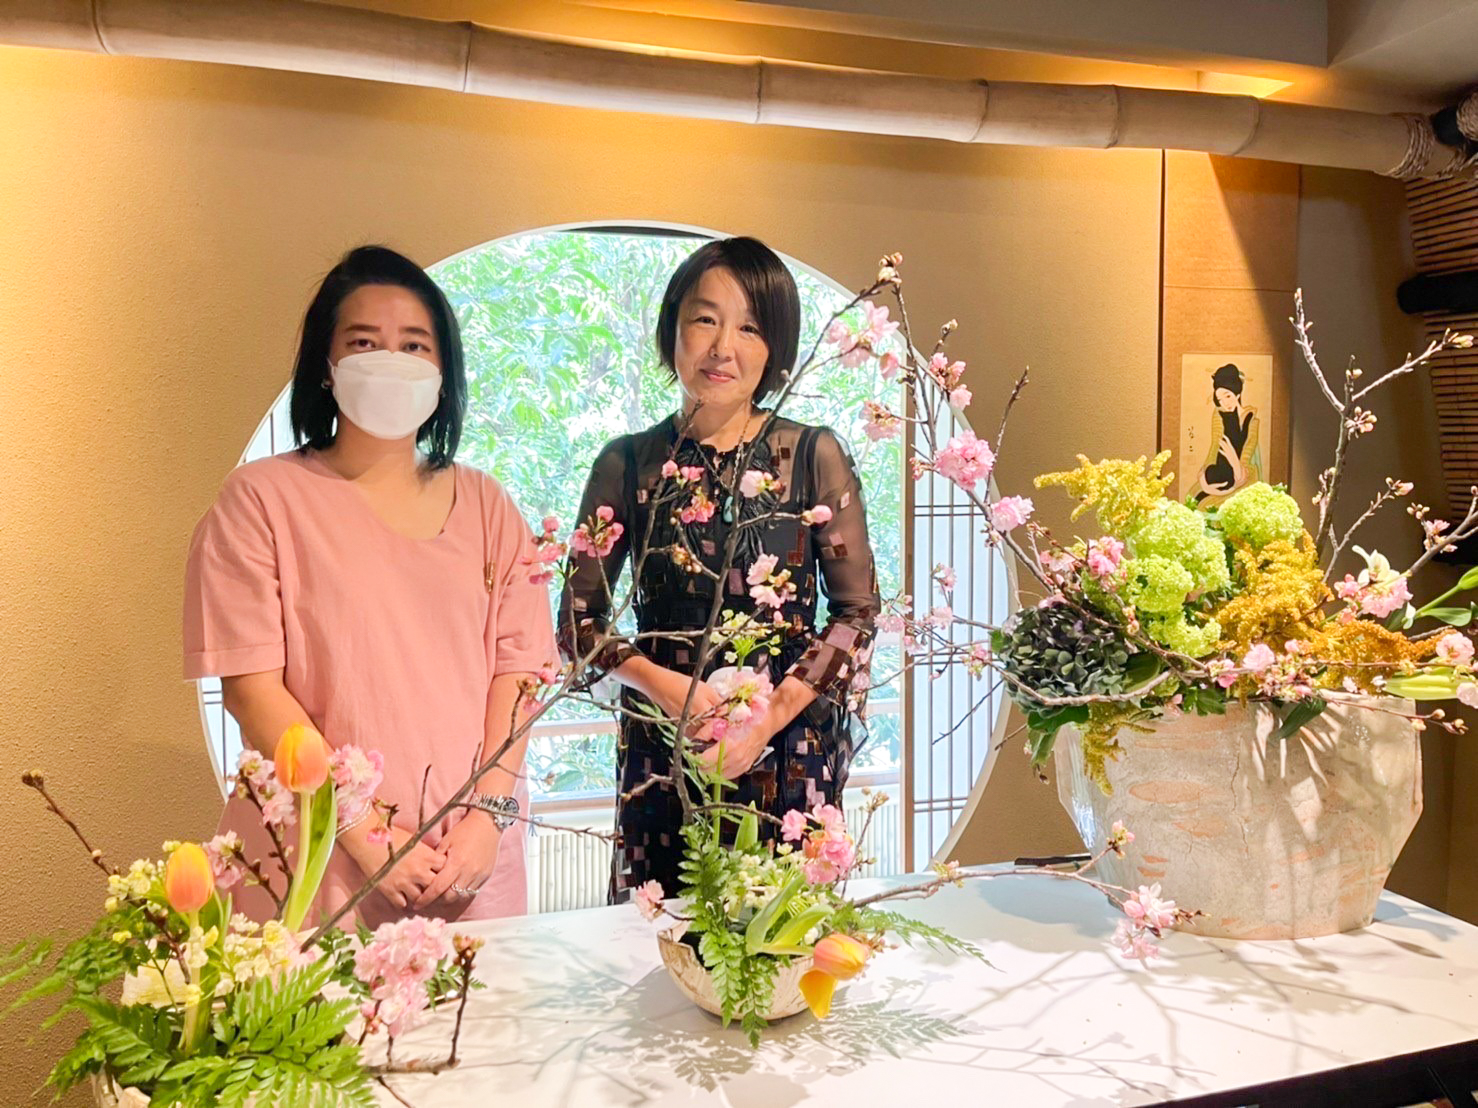 กรุงไทย–แอกซ่า ประกันชีวิต จัดกิจกรรมสุดพิเศษ  “การจัดดอกไม้สไตล์อิเคบานะ”